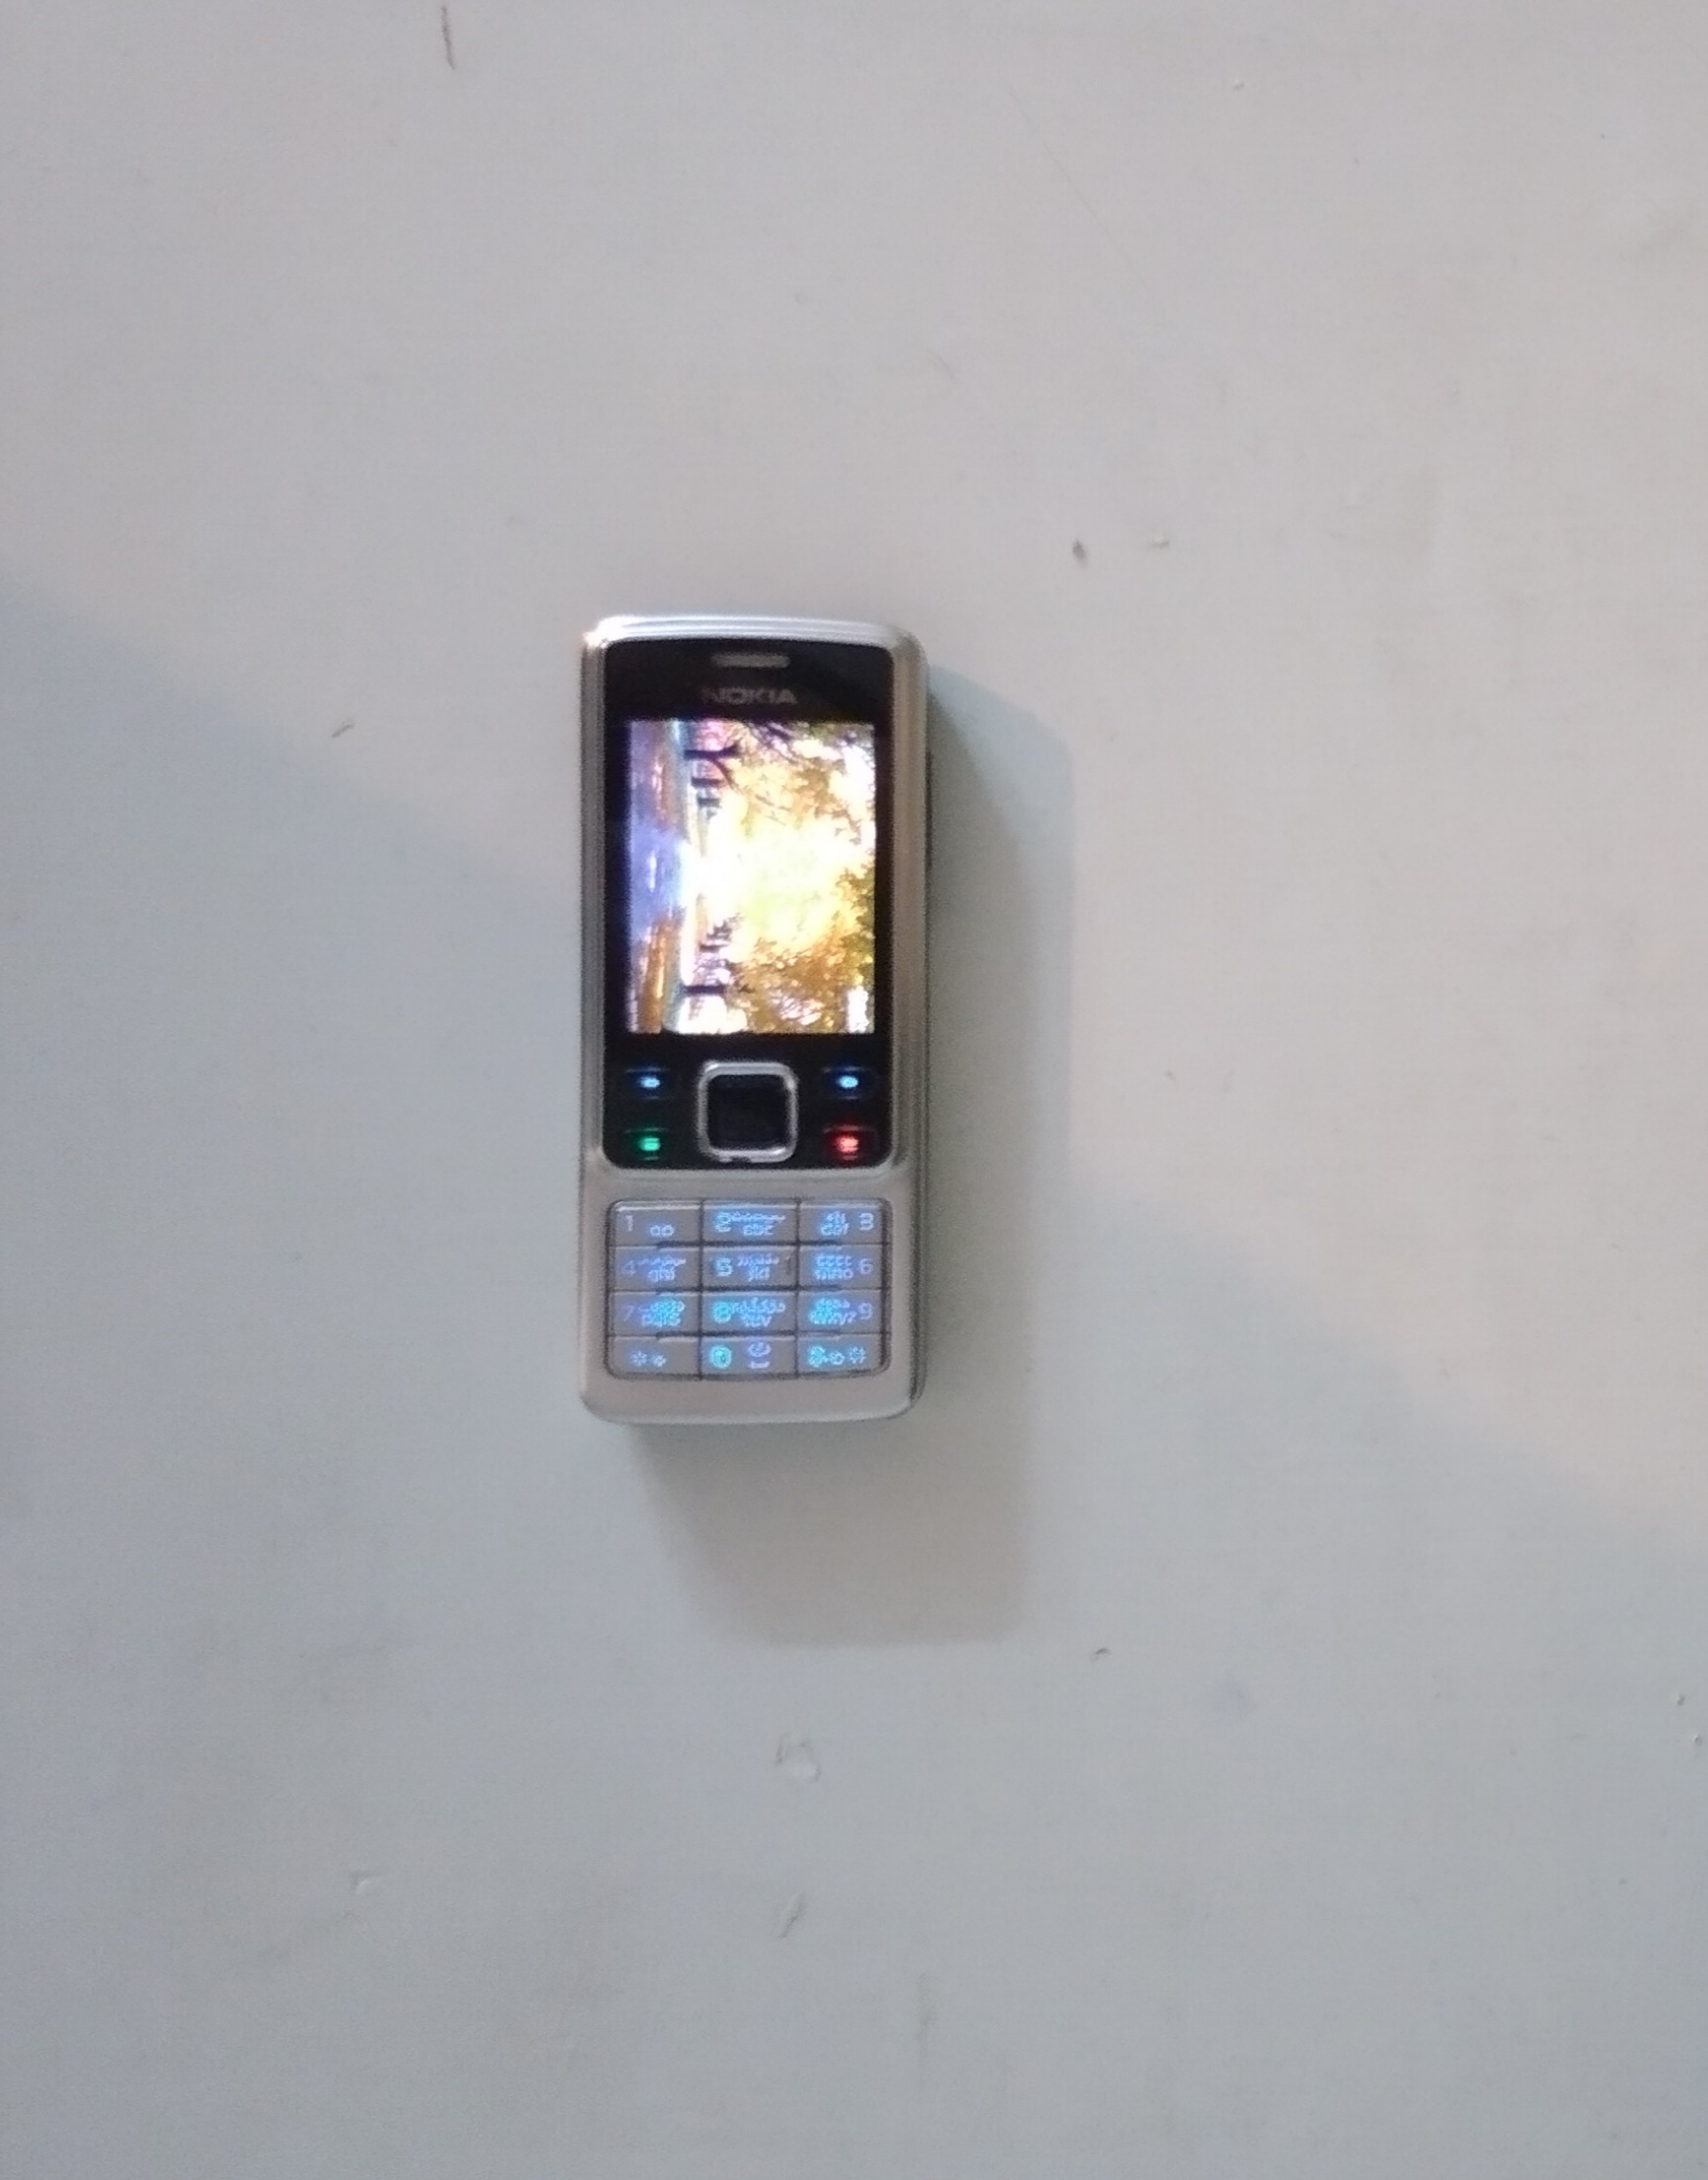 Nokia 6300 - Wikipedia